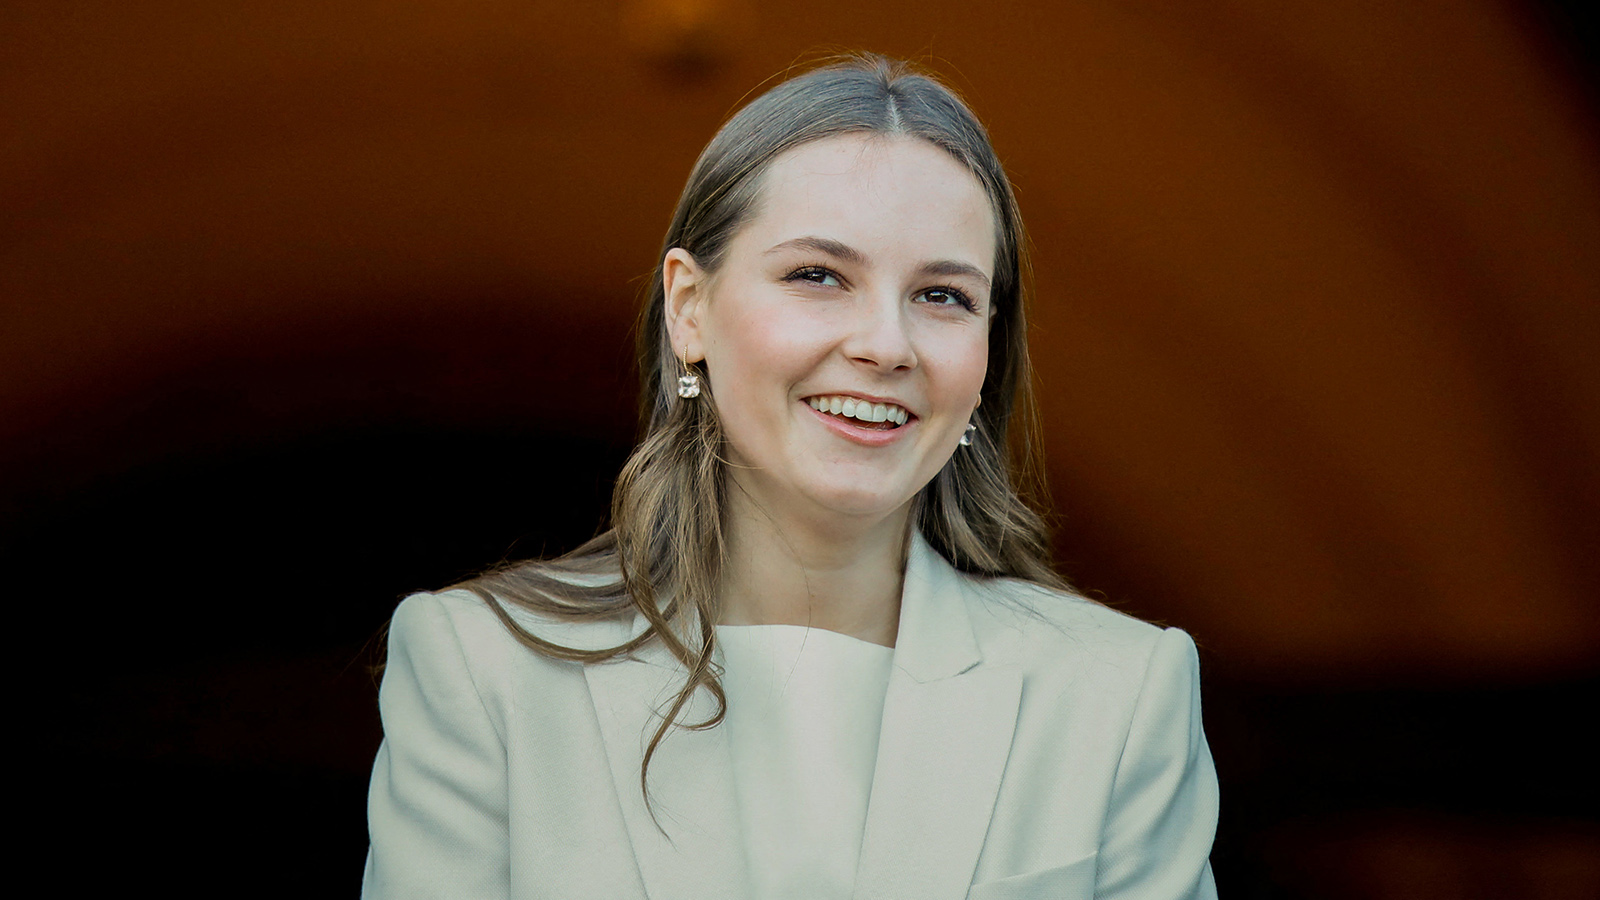 La princesa Ingrid Alexandra de Noruega visita el parlamento antes de cumplir 18 años